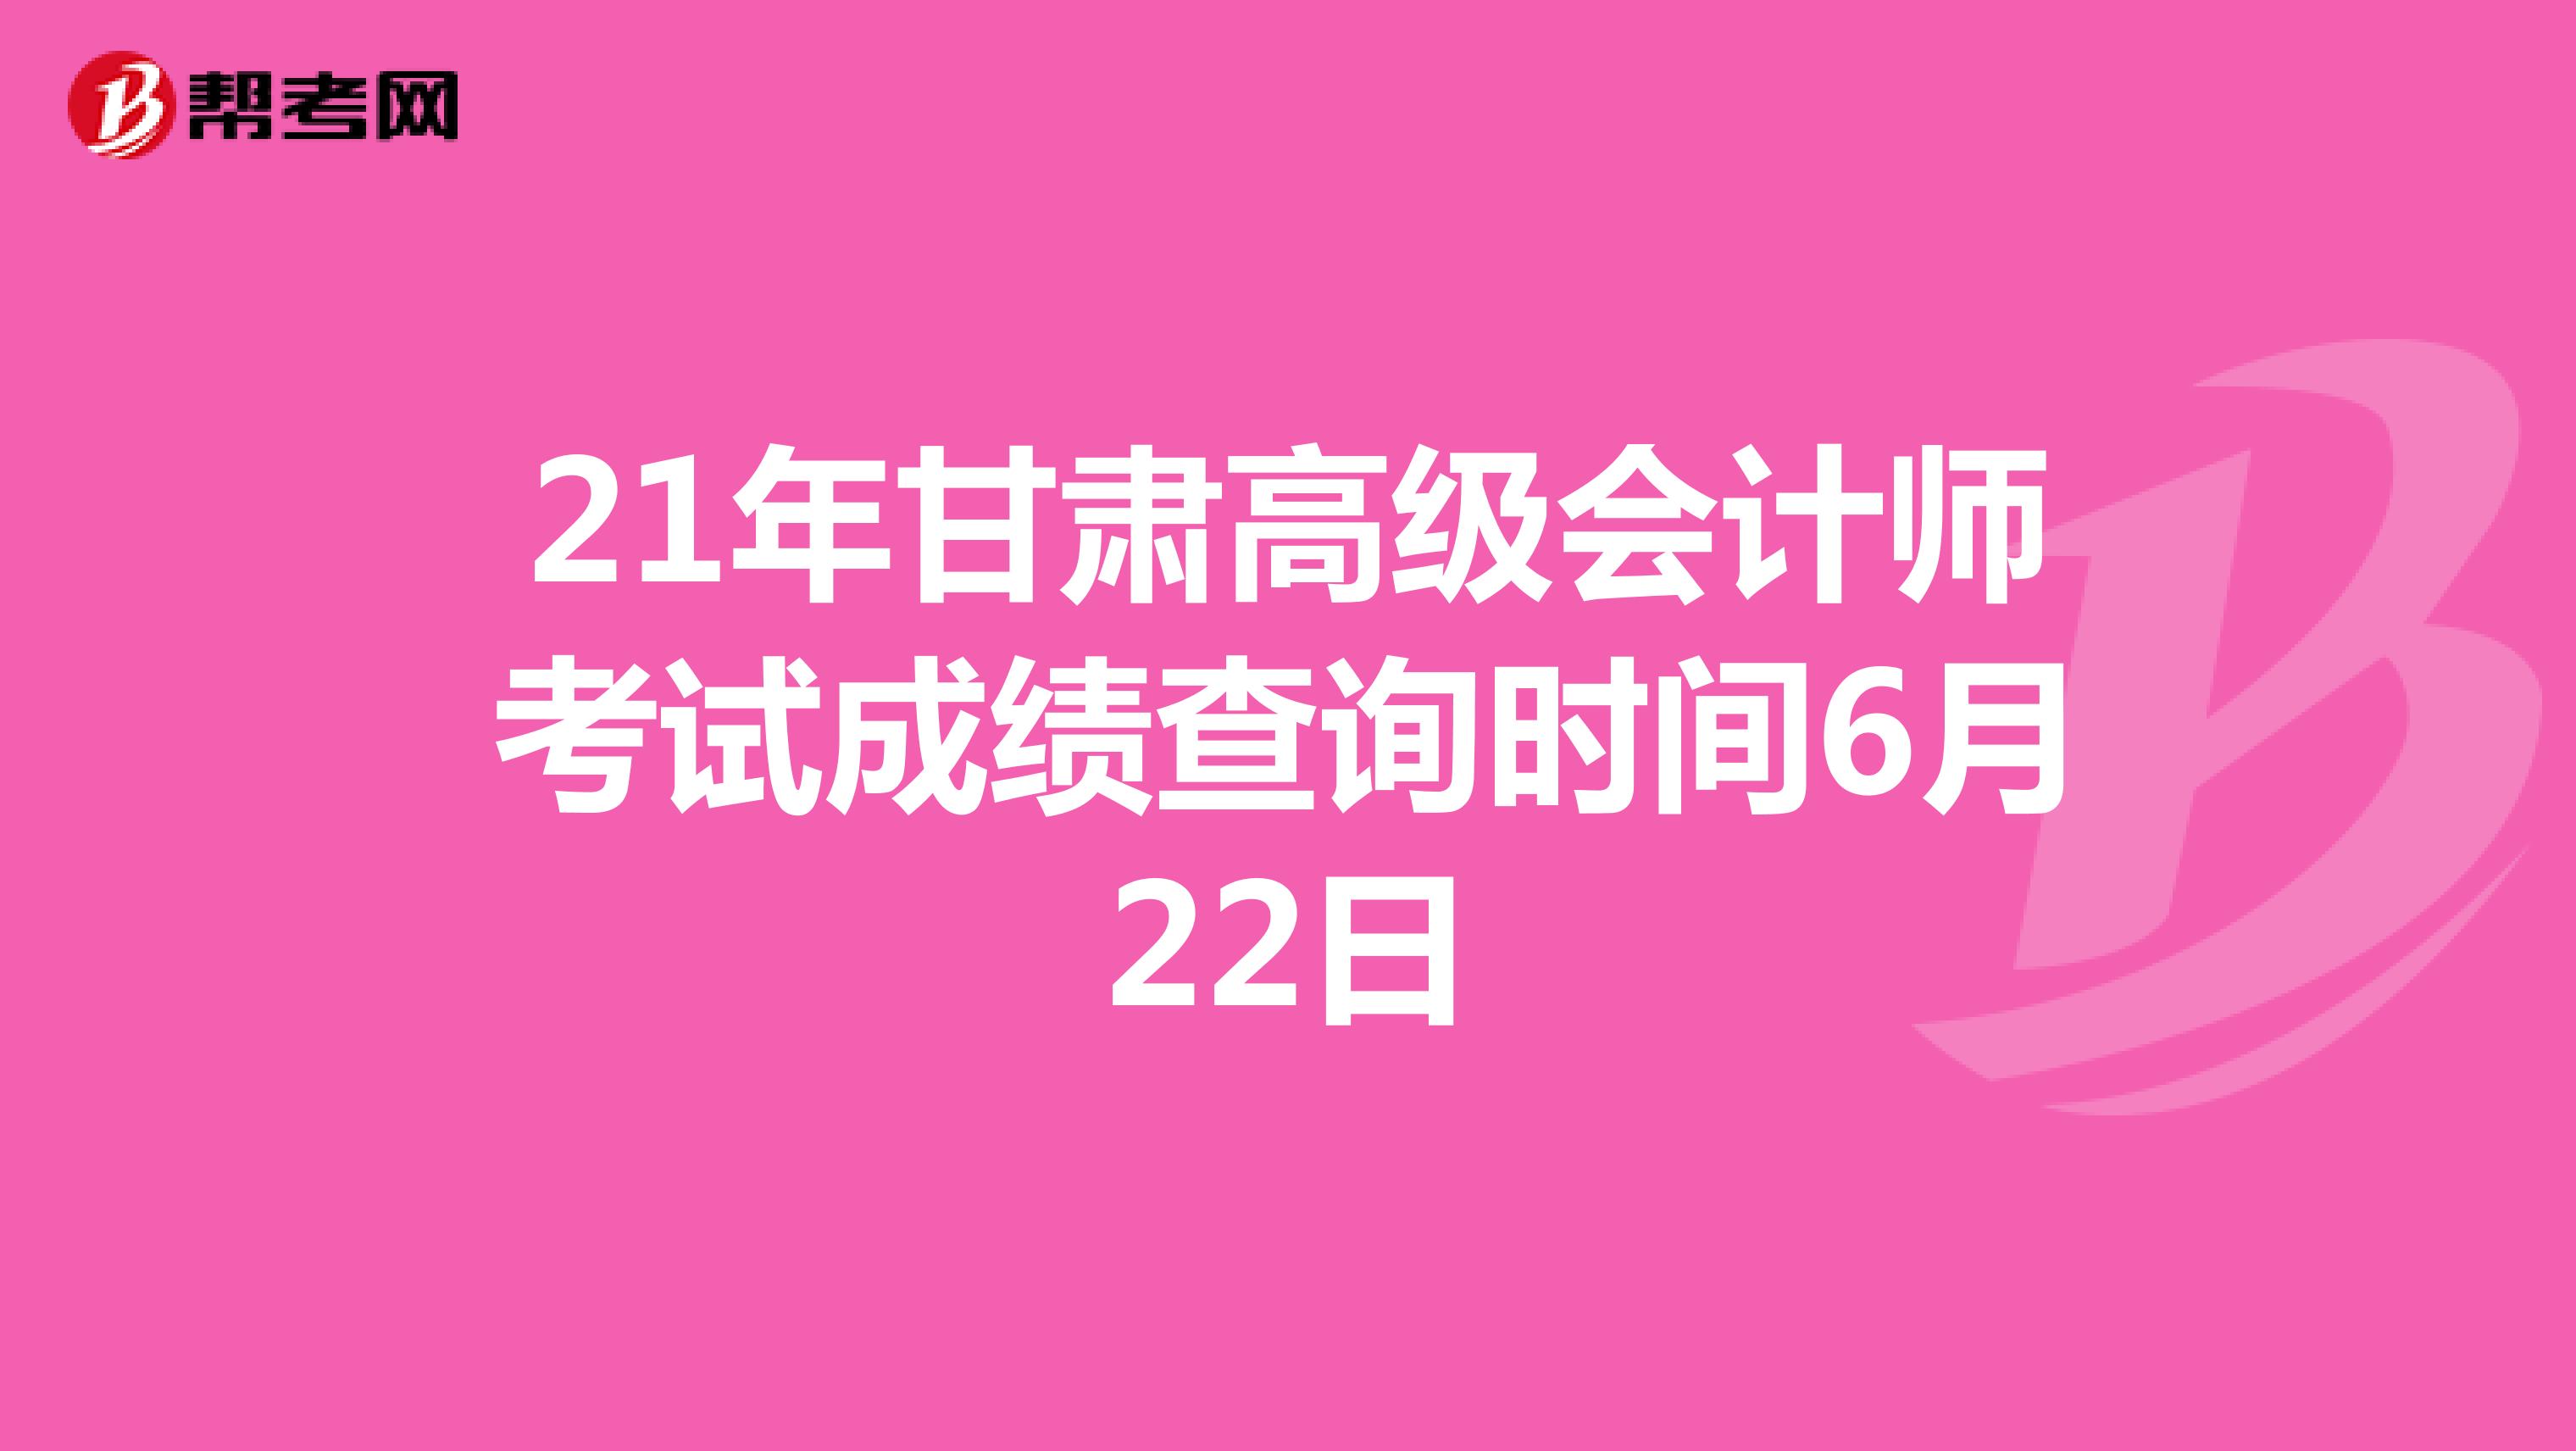 21年甘肃高级会计师考试成绩查询时间6月22日